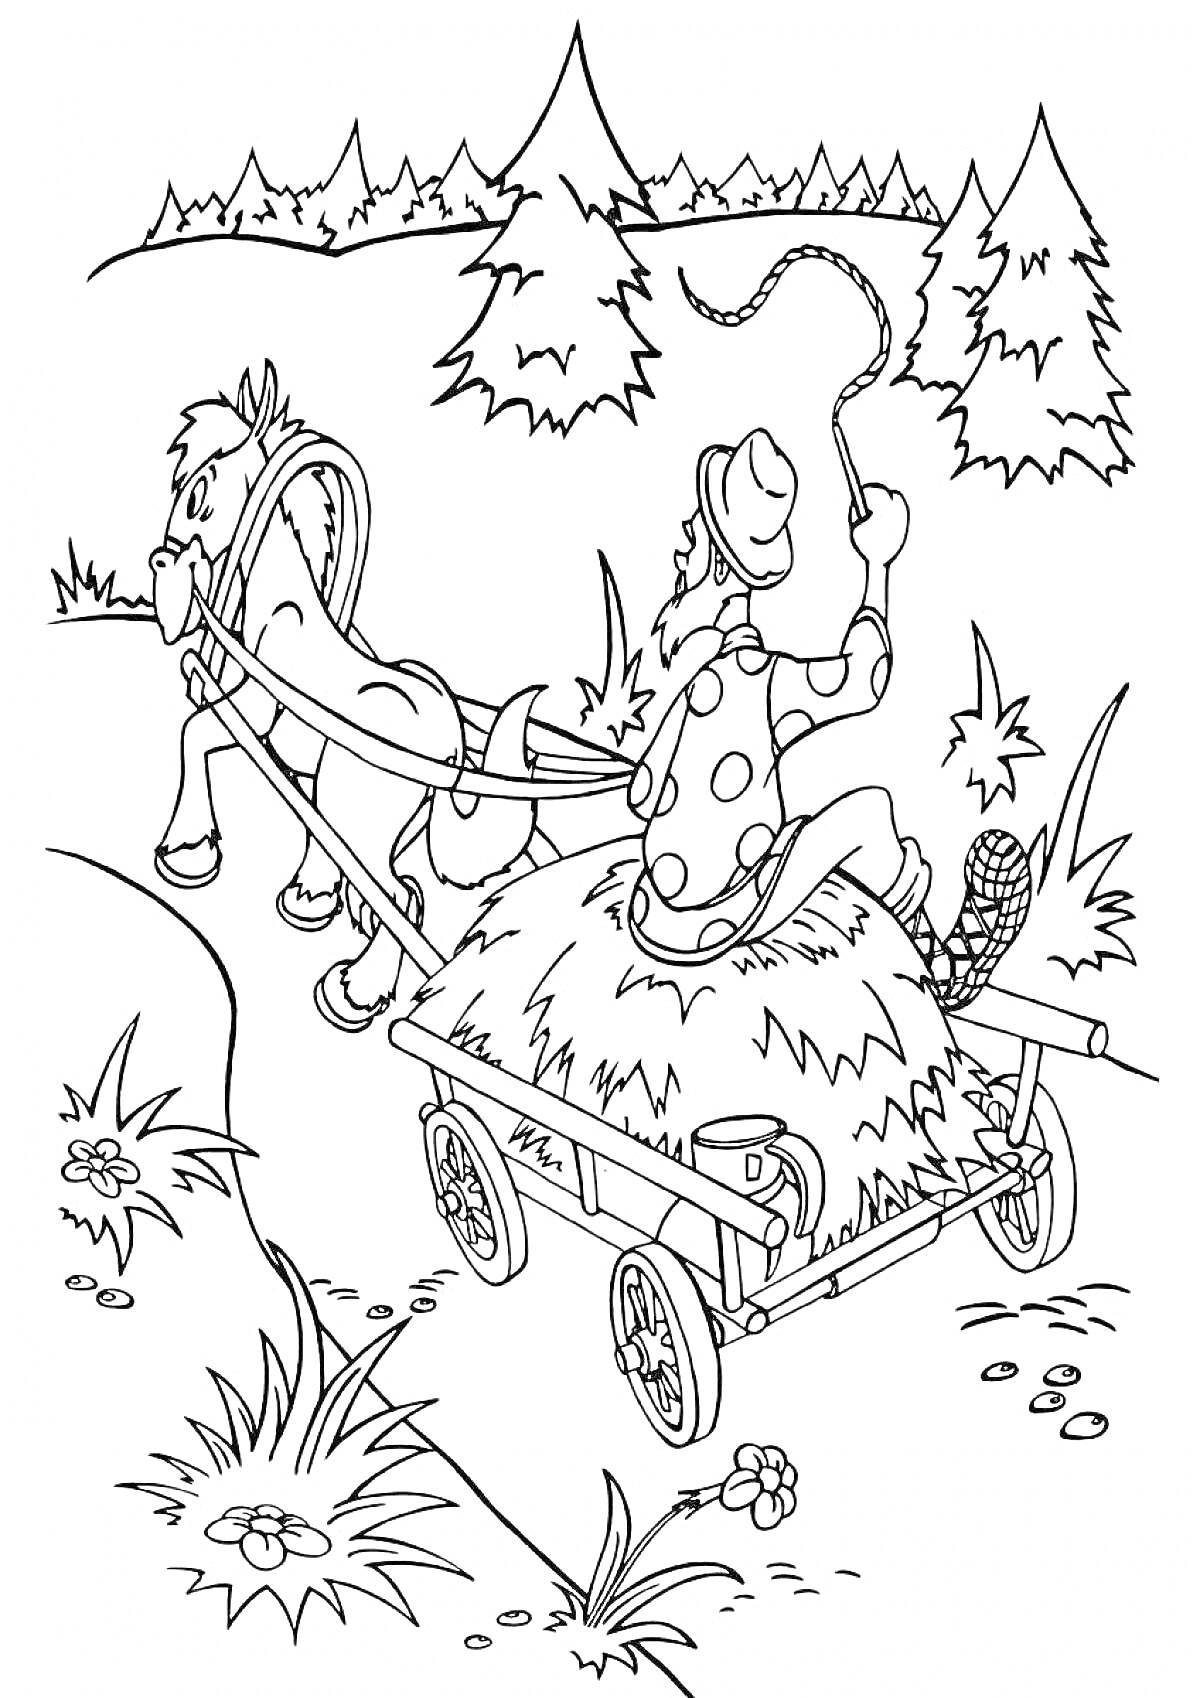 Раскраска Мужчина с кнутом едет на телеге с сеном, запряженной лошадью, в лесу